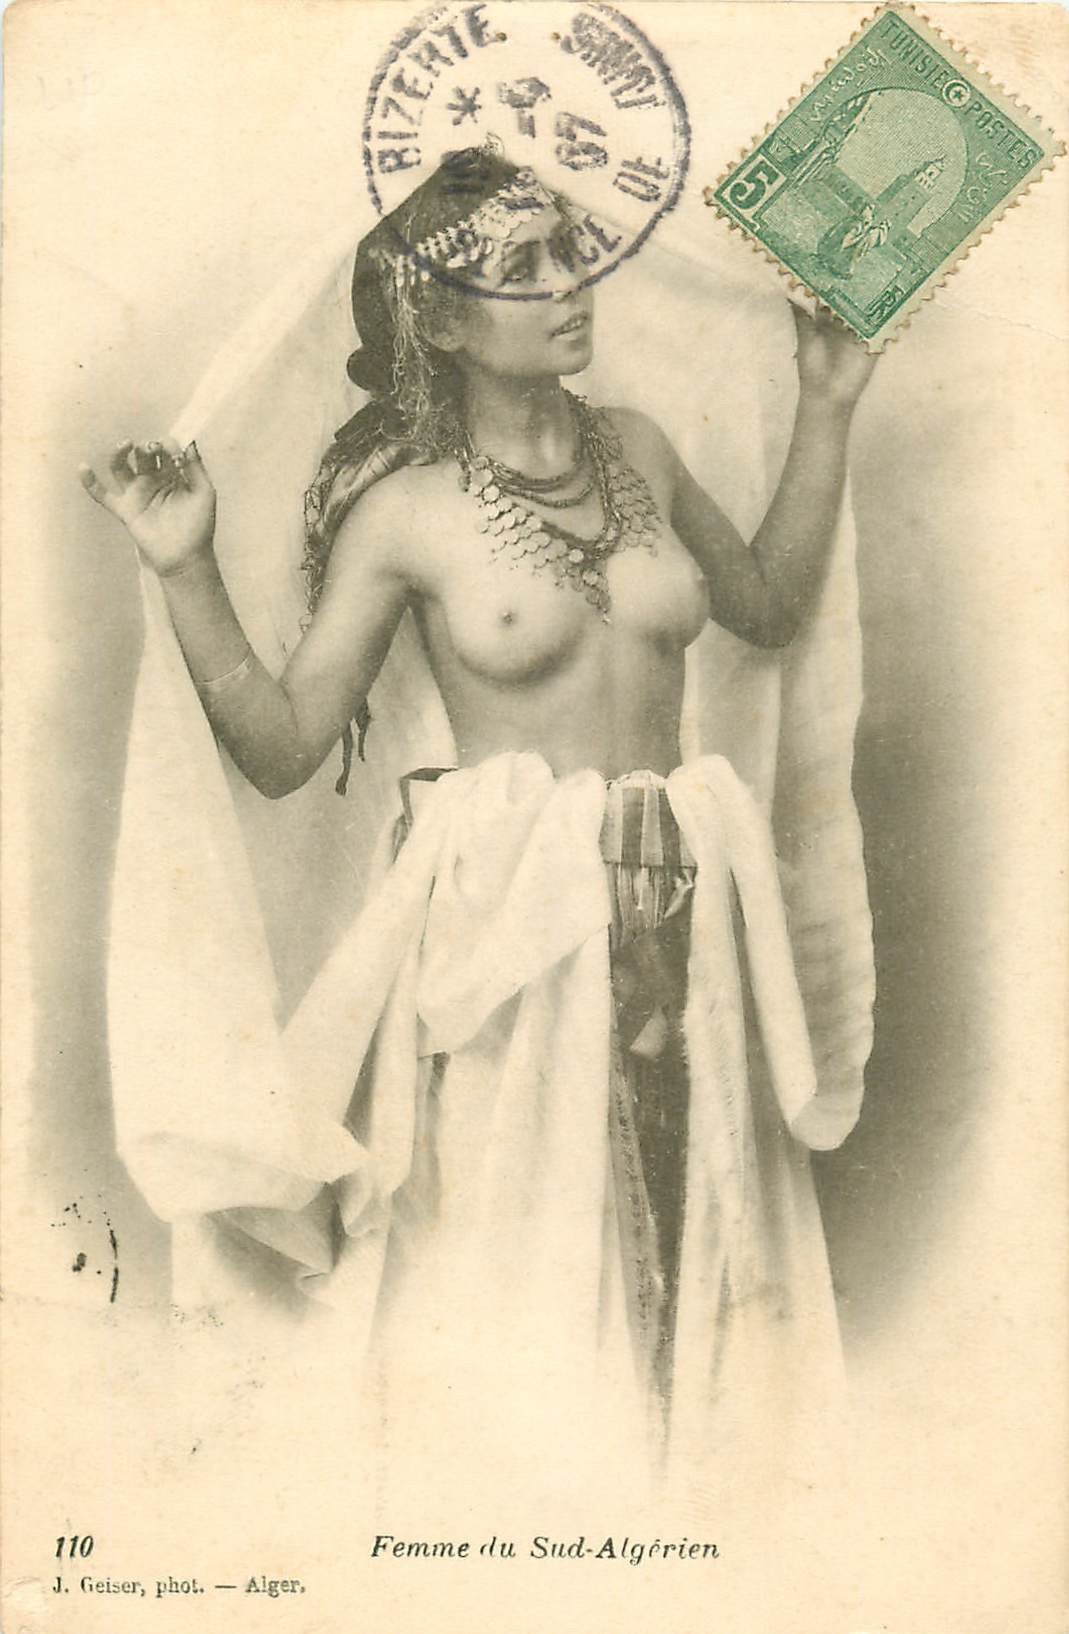 WW ALGERIE. Femme du Sud-Algérien aux seins nus 1907